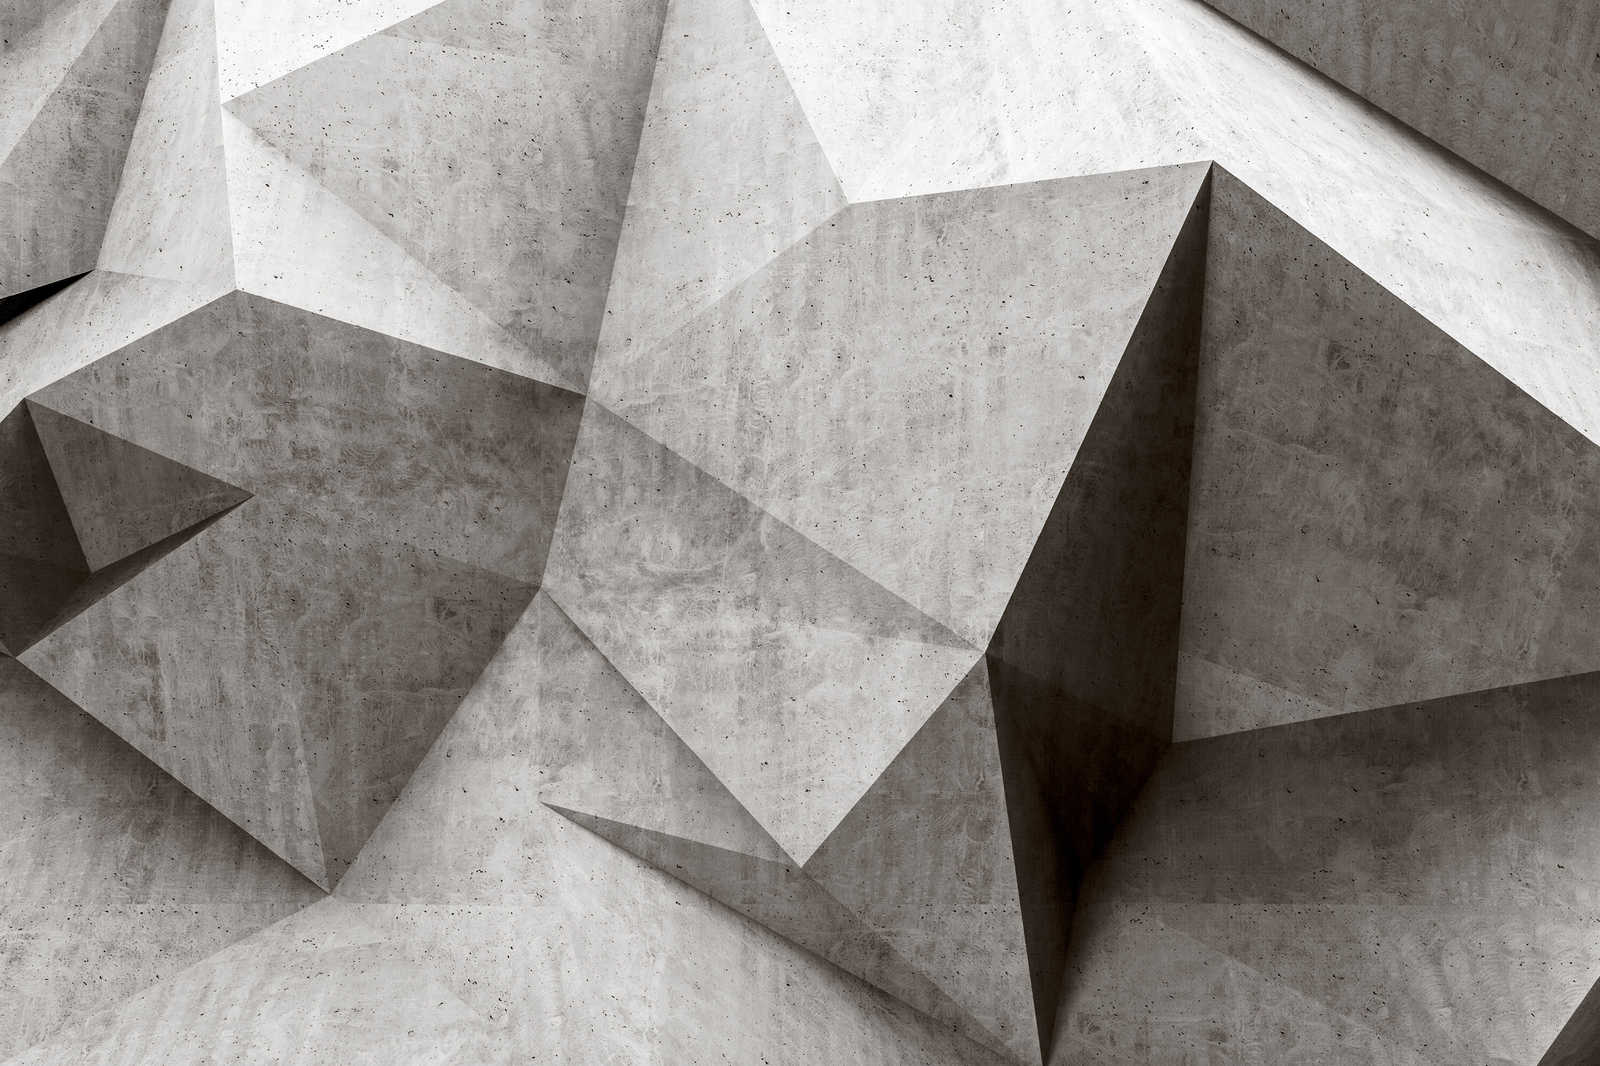             Boulder 1 - Polygones en béton 3D cool toile - 0,90 m x 0,60 m
        